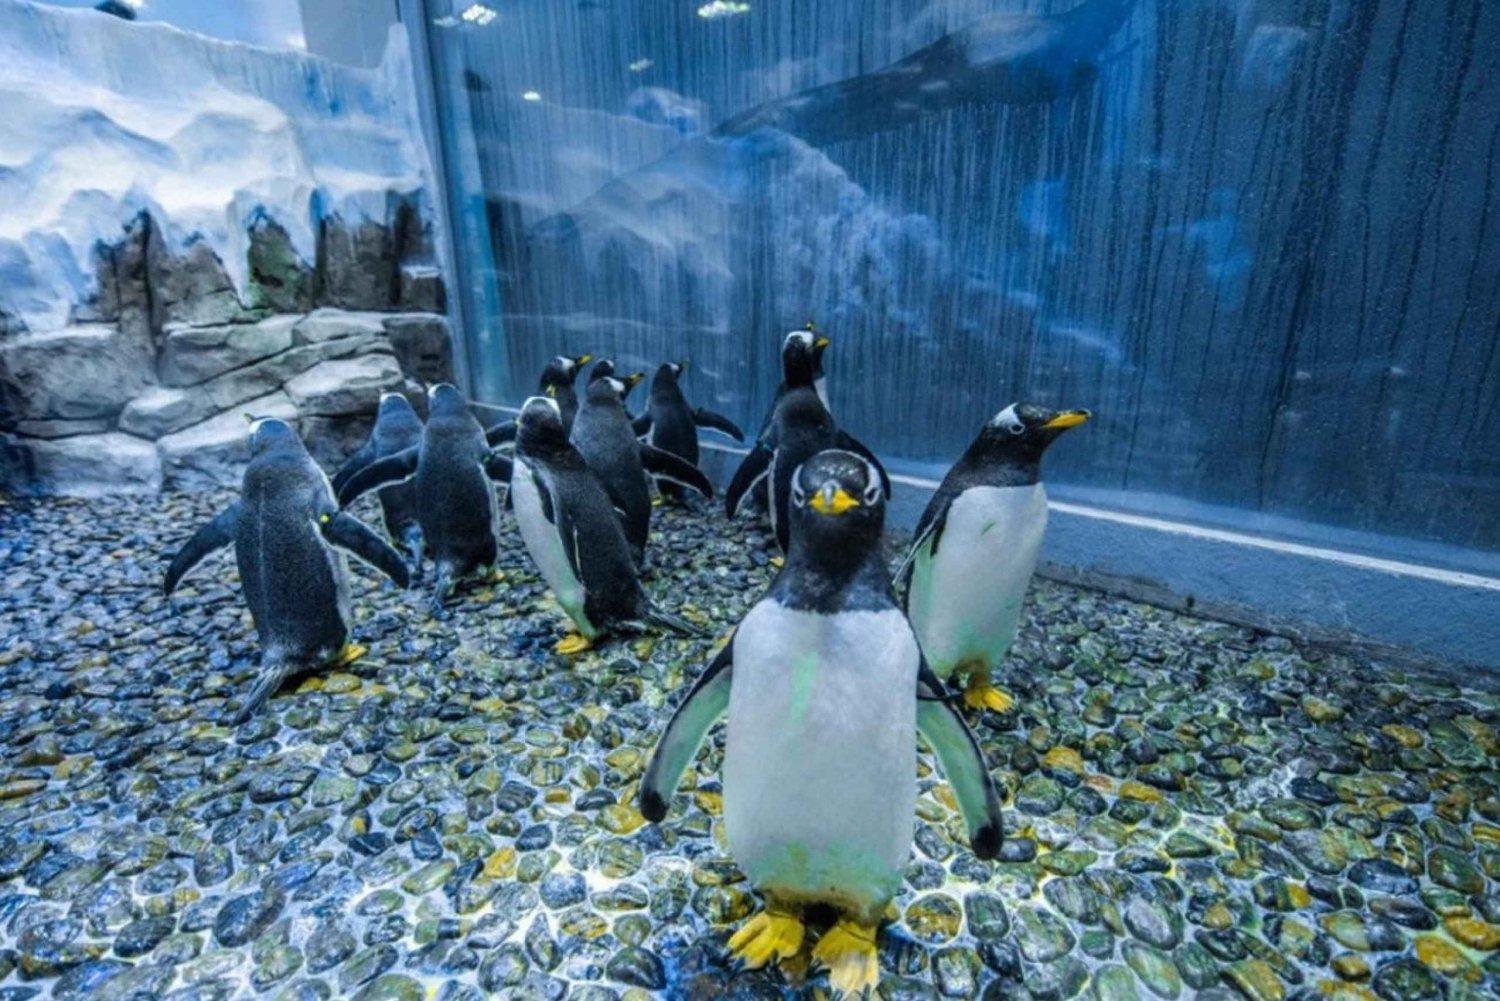 Dubai: Aquarium and Underwater Zoo All Access Pass